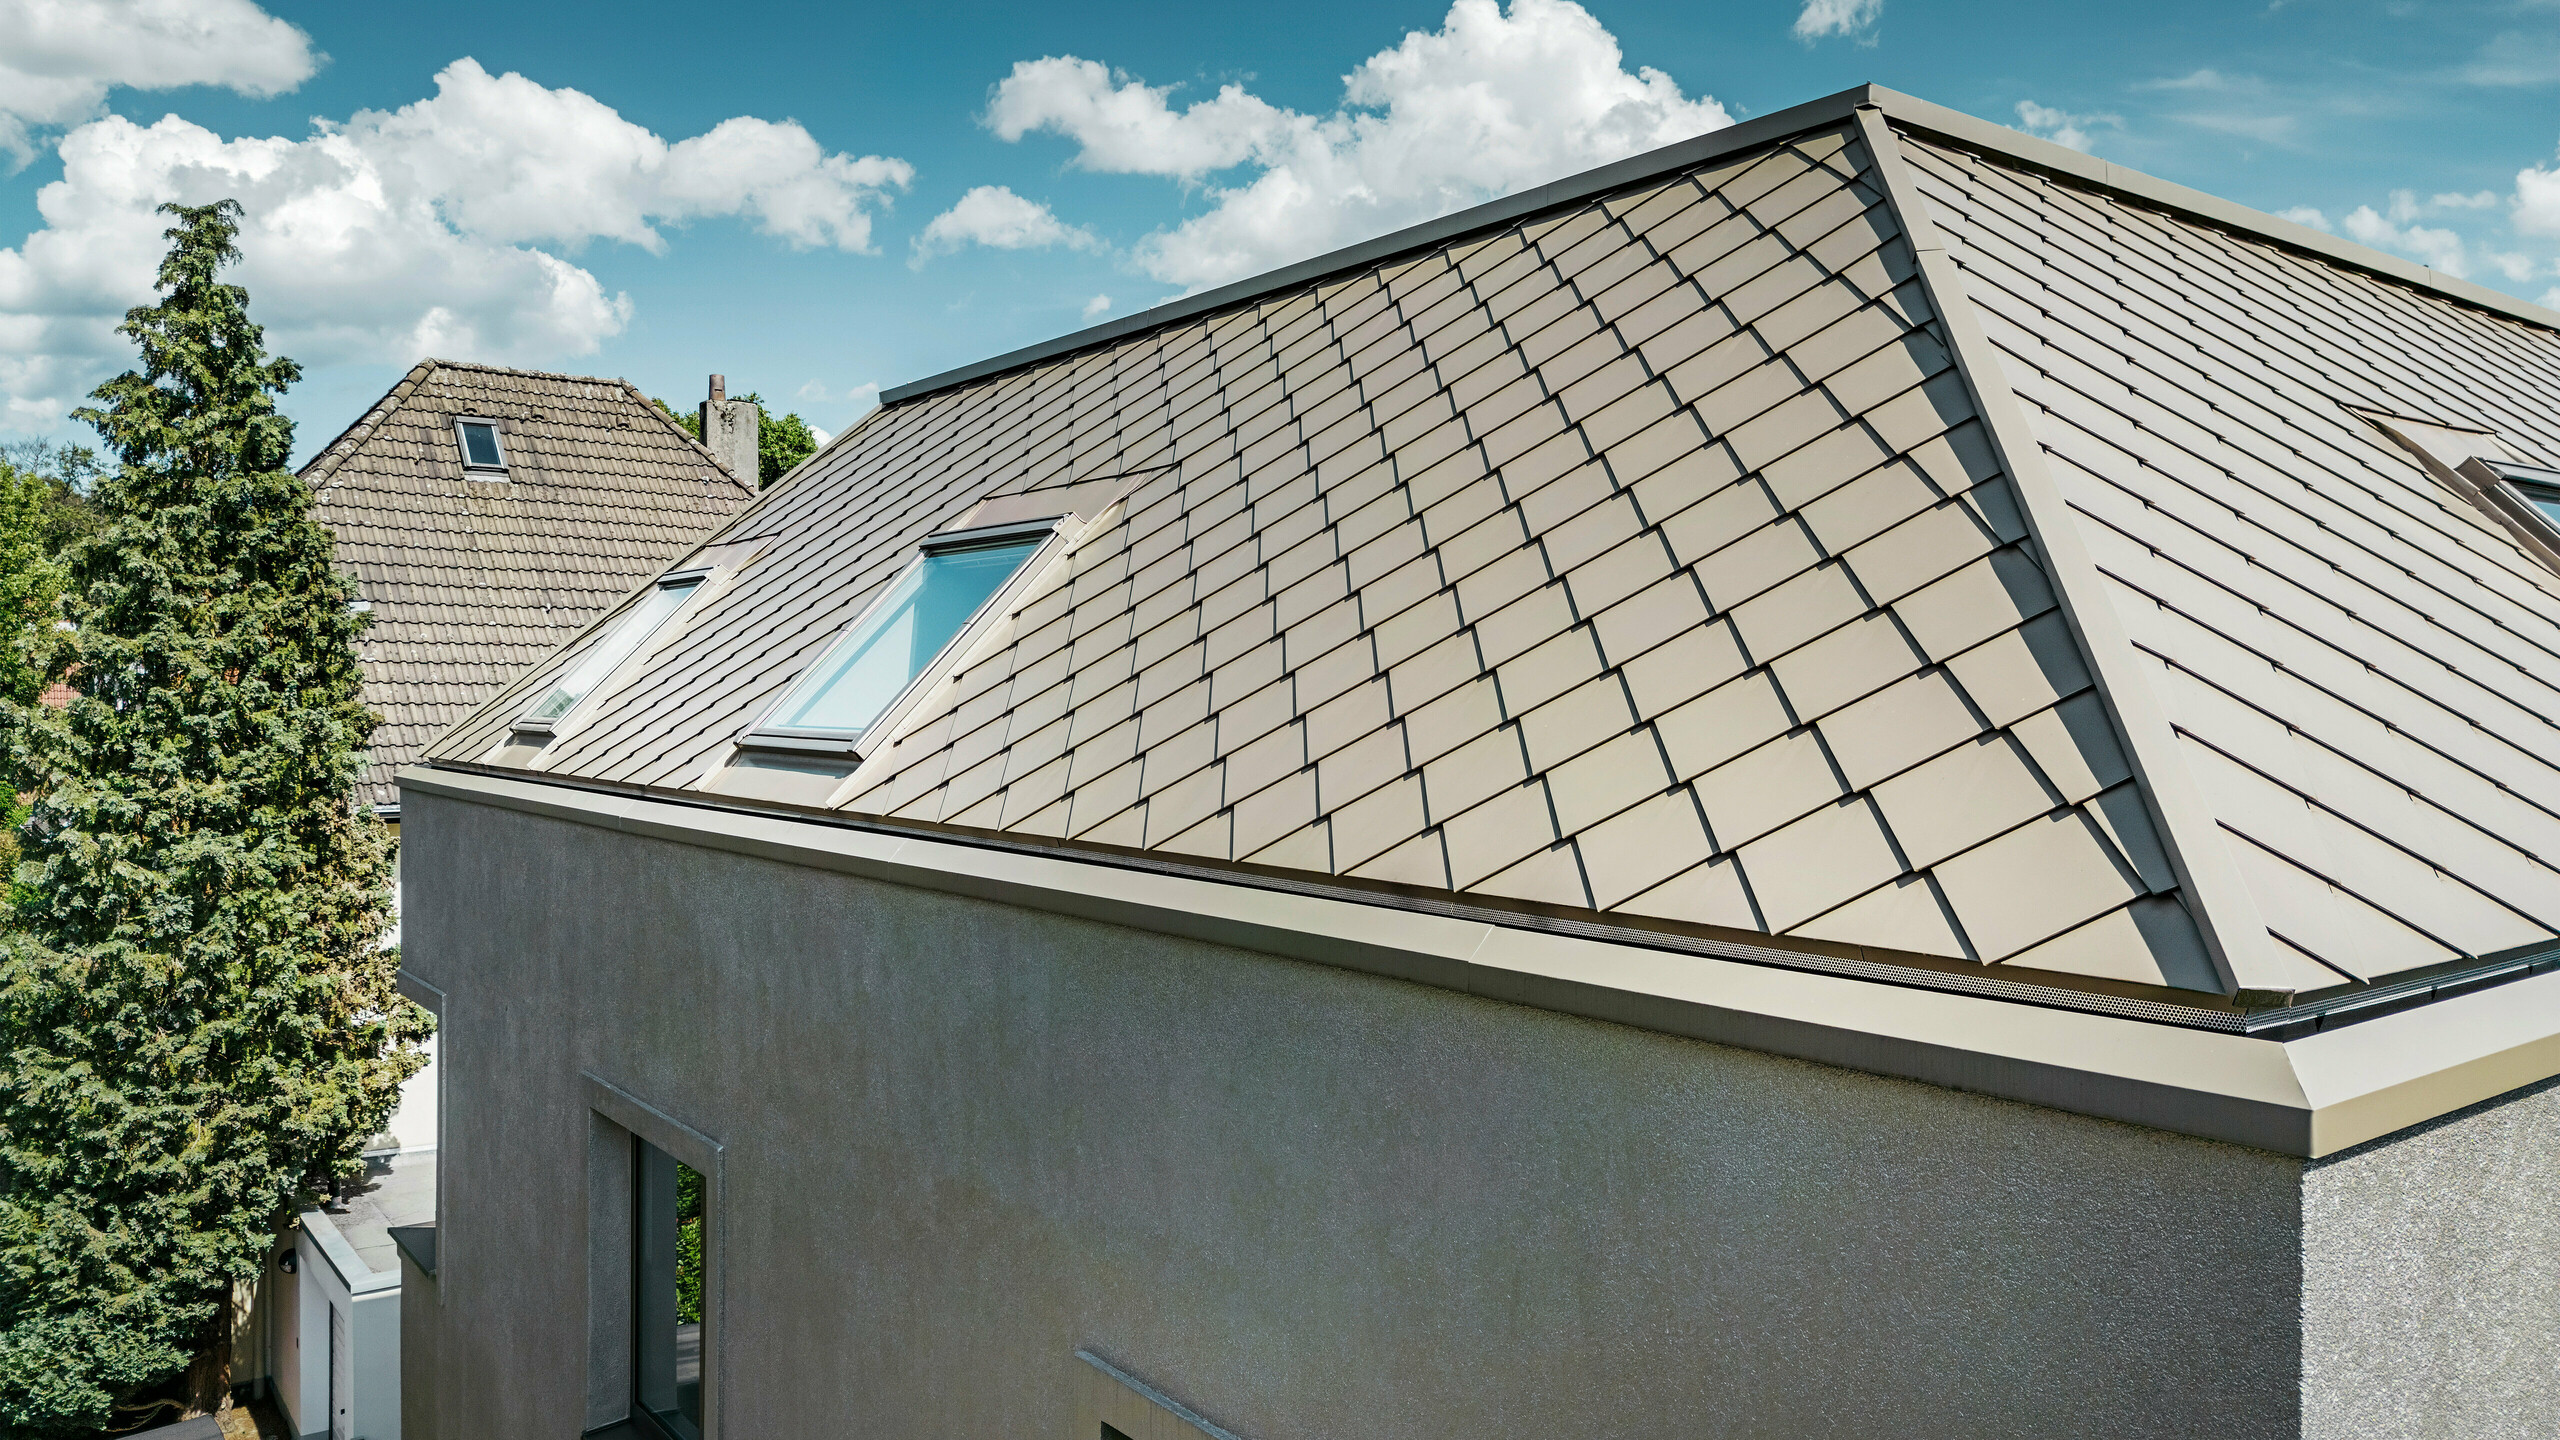 Detailný záber na valbovú strechu moderného rodinného domu s hliníkovým strešným plášťom bronzovej farby od spoločnosti PREFA. Strešná konštrukcia vykazuje vysokokvalitnú povrchovú úpravu s integrovanými strešnými oknami, ktoré poskytujú dodatočné prirodzené svetlo v interiéri. Čisté línie a lesklý povrch hliníkových strešných panelov zdôrazňujú moderný a elegantný dizajn domu.